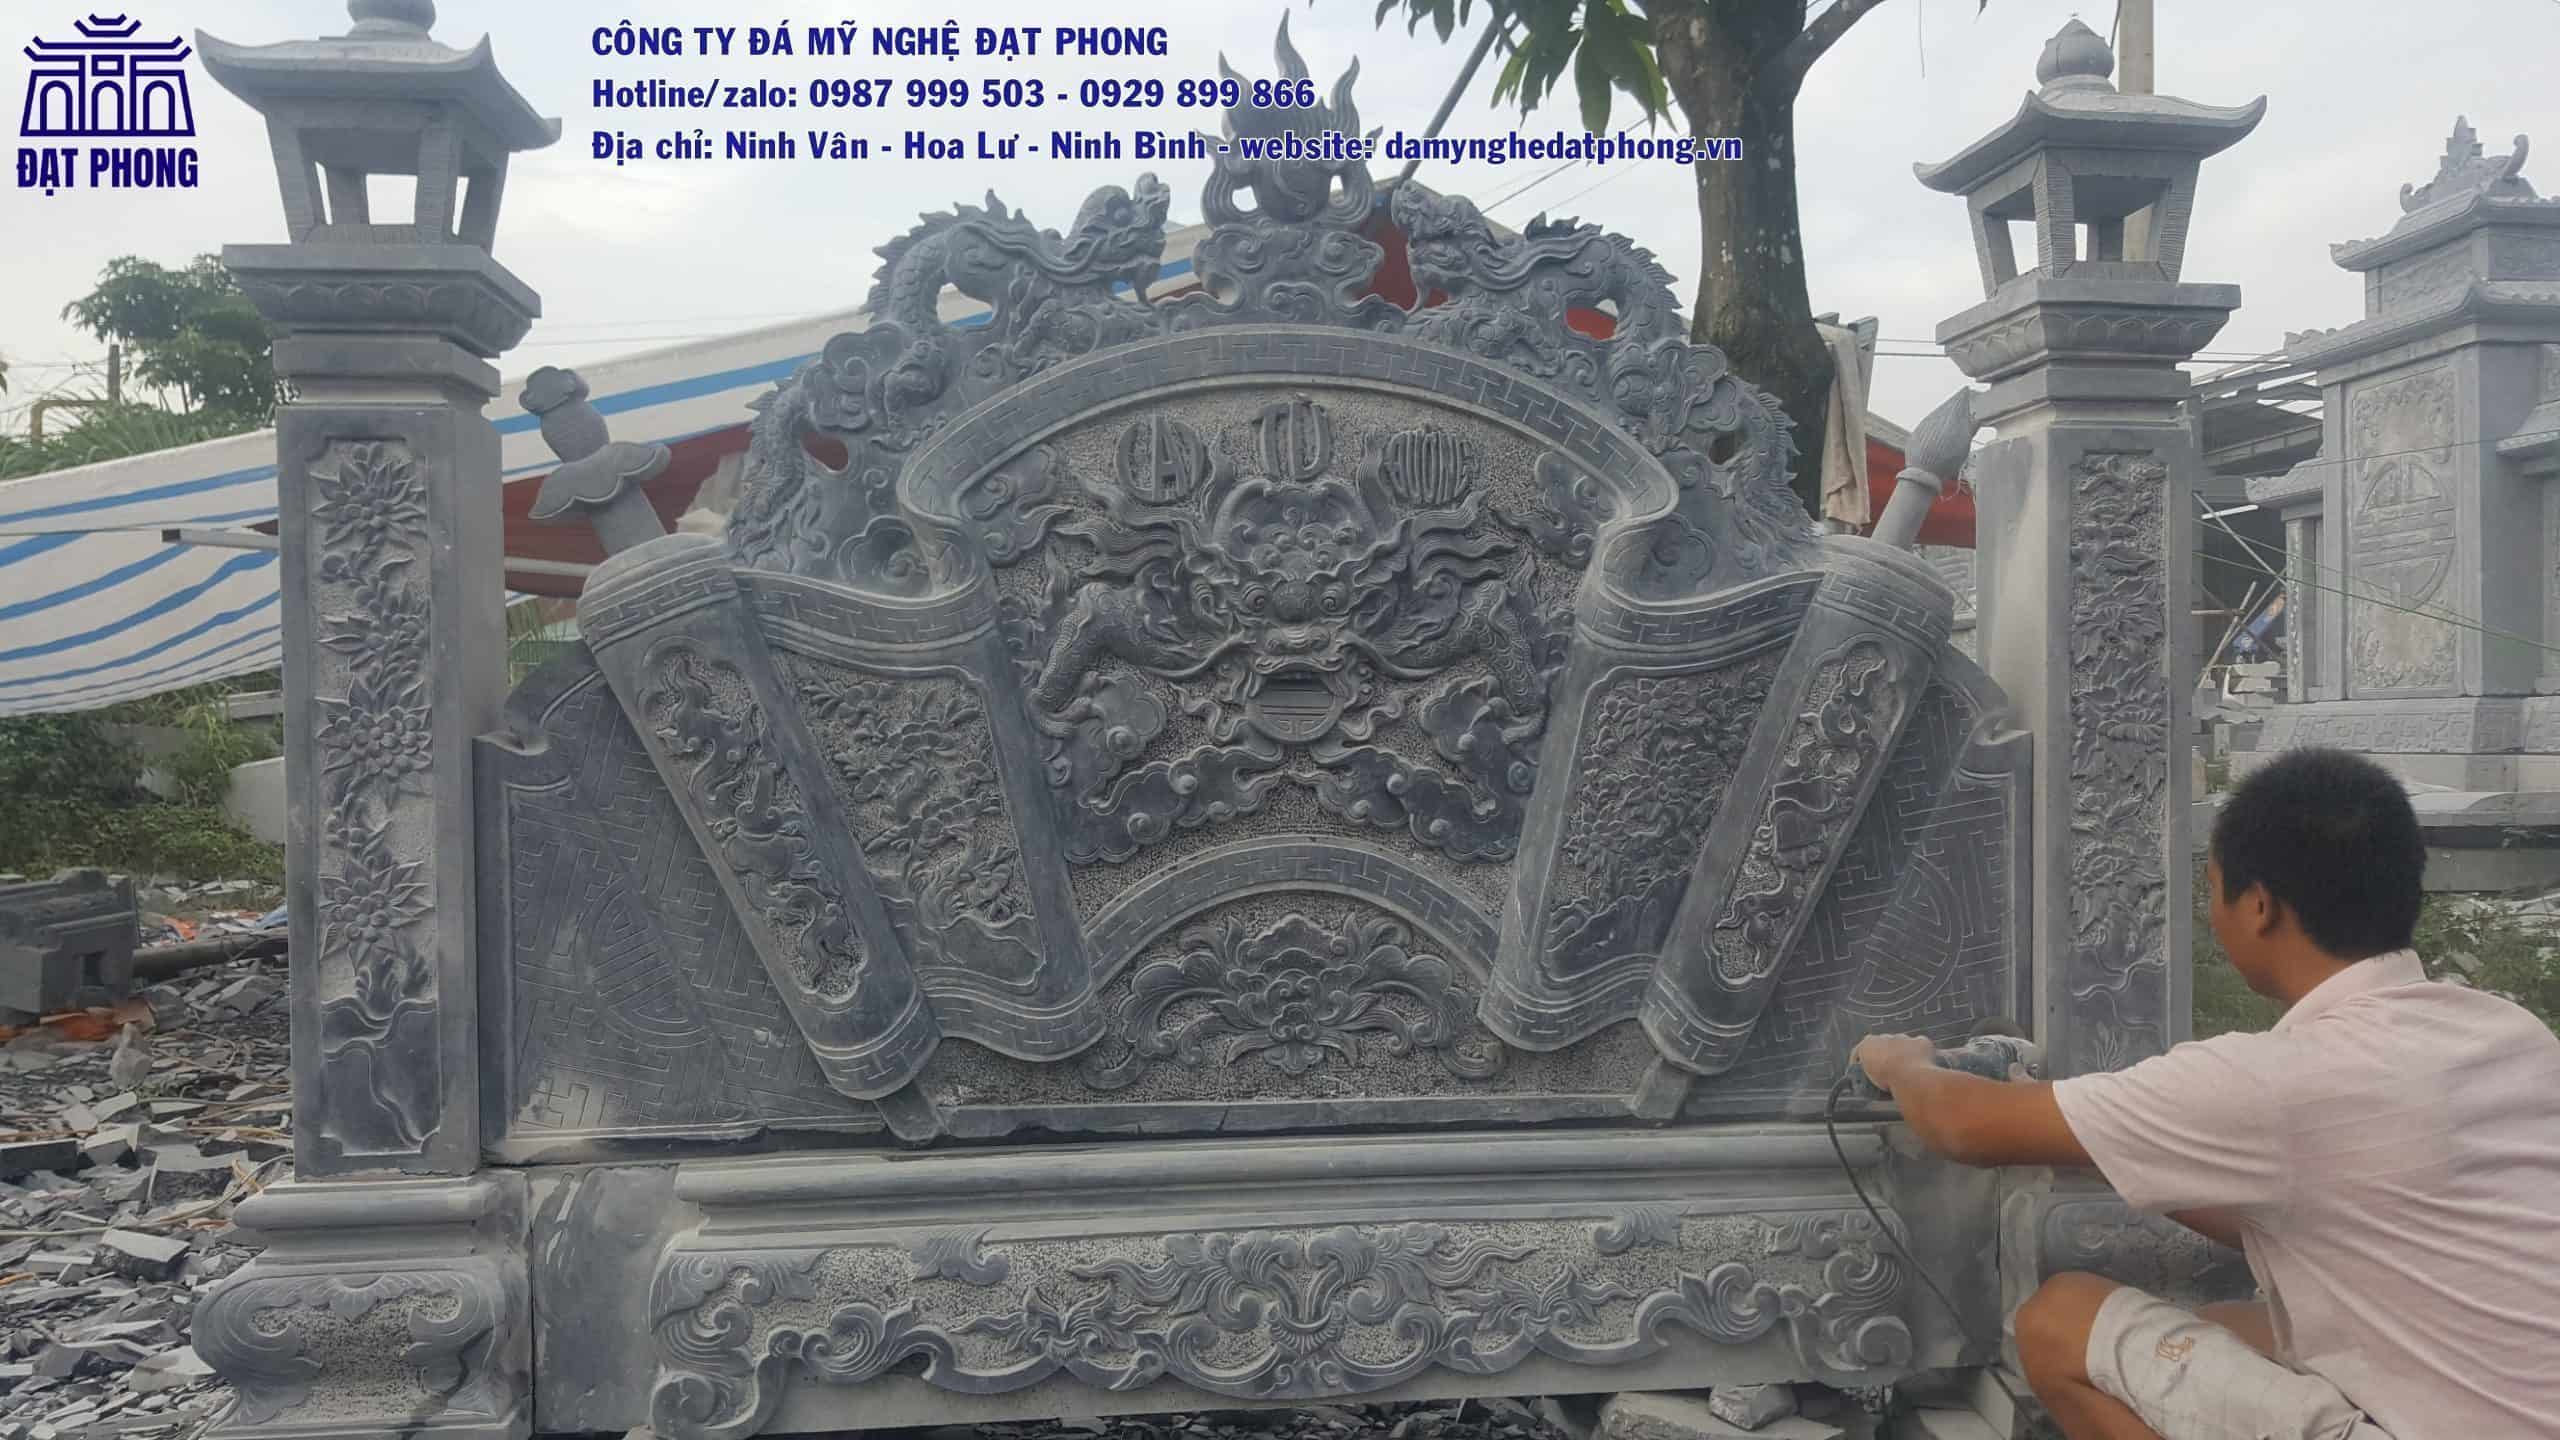 Vị trí đặt mộ được kiến trúc sư của Đạt Phong bố trí tỉ mỉ trong bản vẽ phù hợp với yêu cầu của khác hàng trước khi thi công